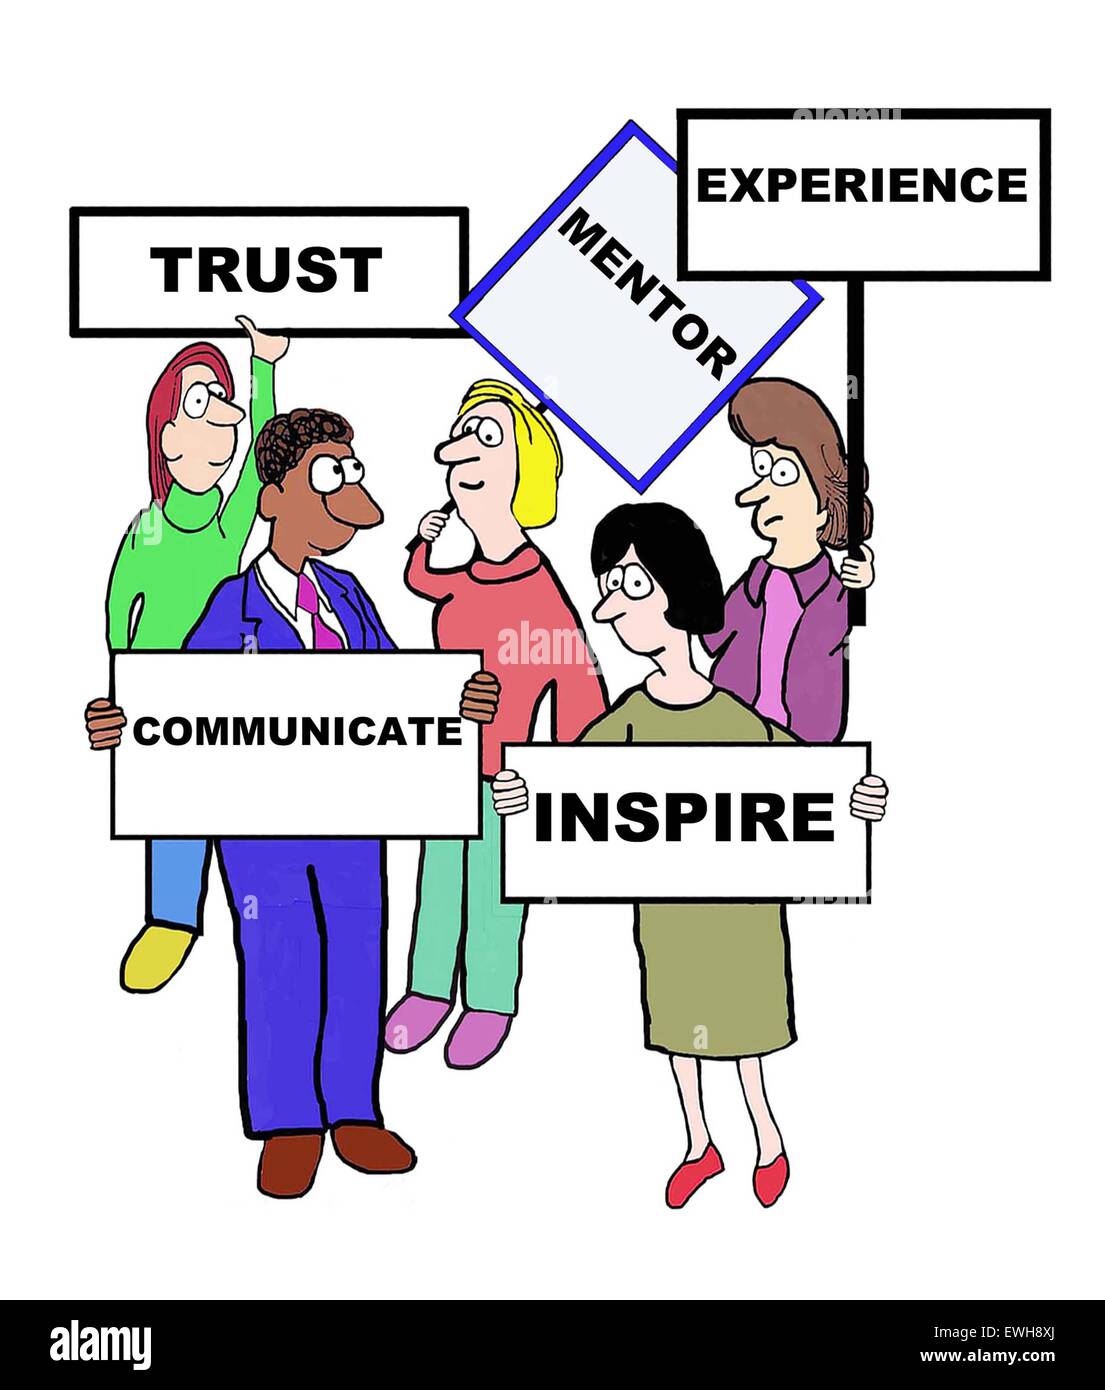 Comic-Geschäft mit Zeichen, die Definition von "mentor": "Vertrauen, Erfahrung, inspirieren, zu kommunizieren". Stockfoto